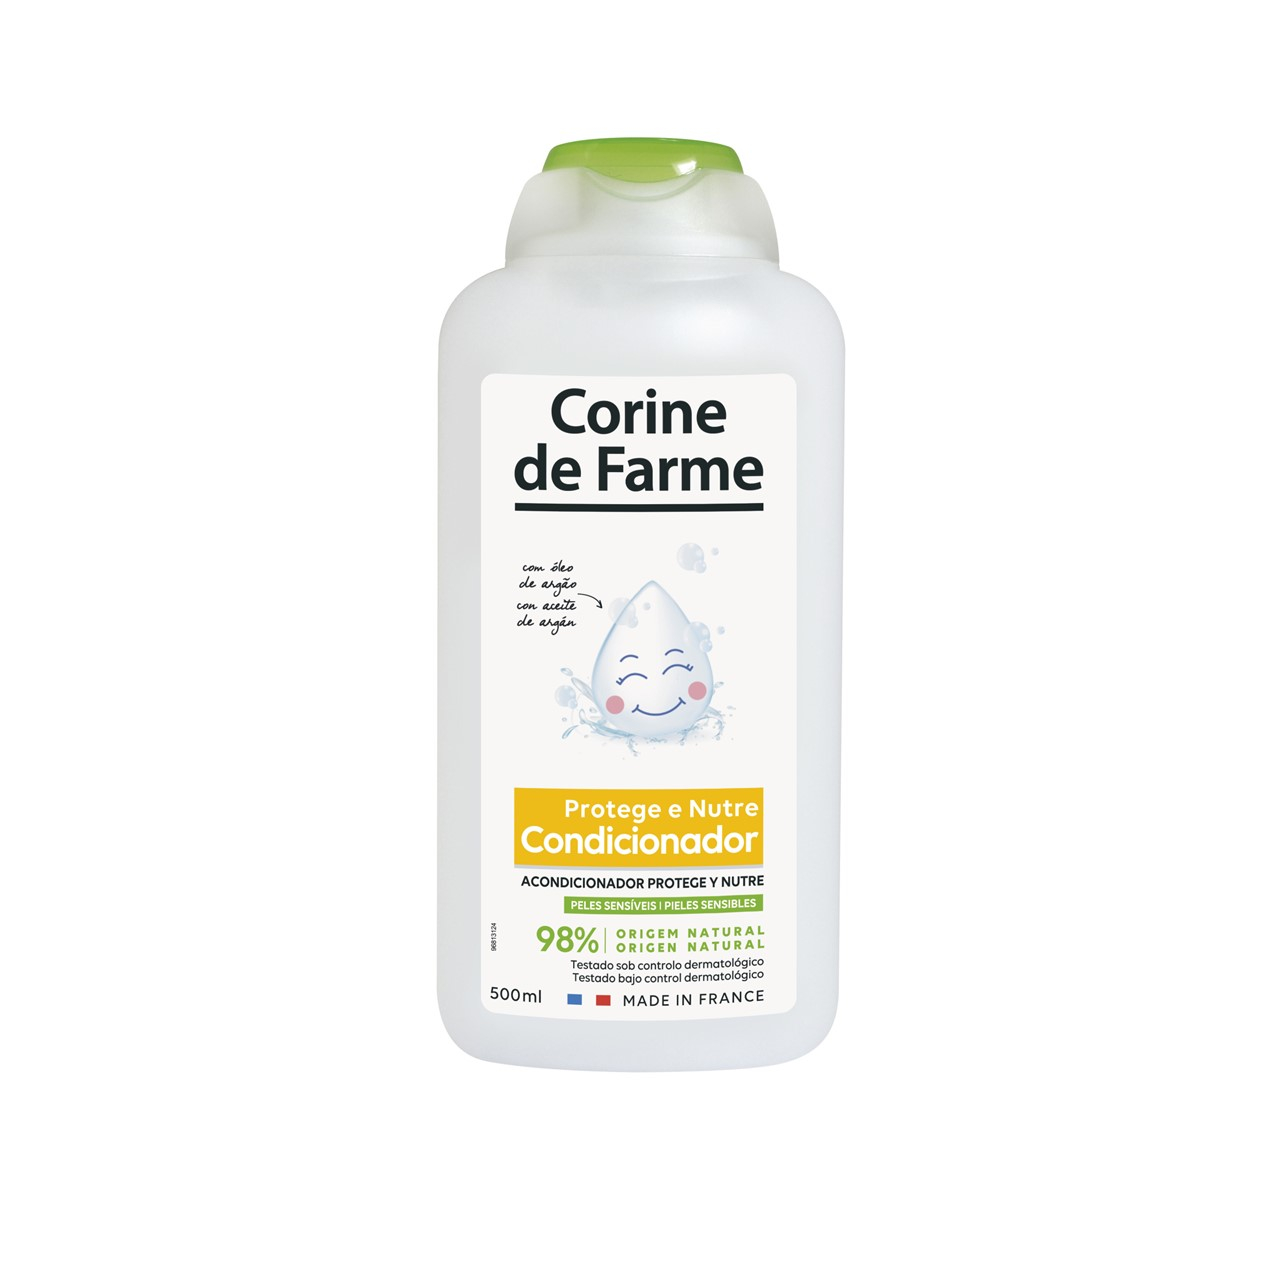 Corine de Farme Protect and Nourish Conditioner With Argan Oil 500ml